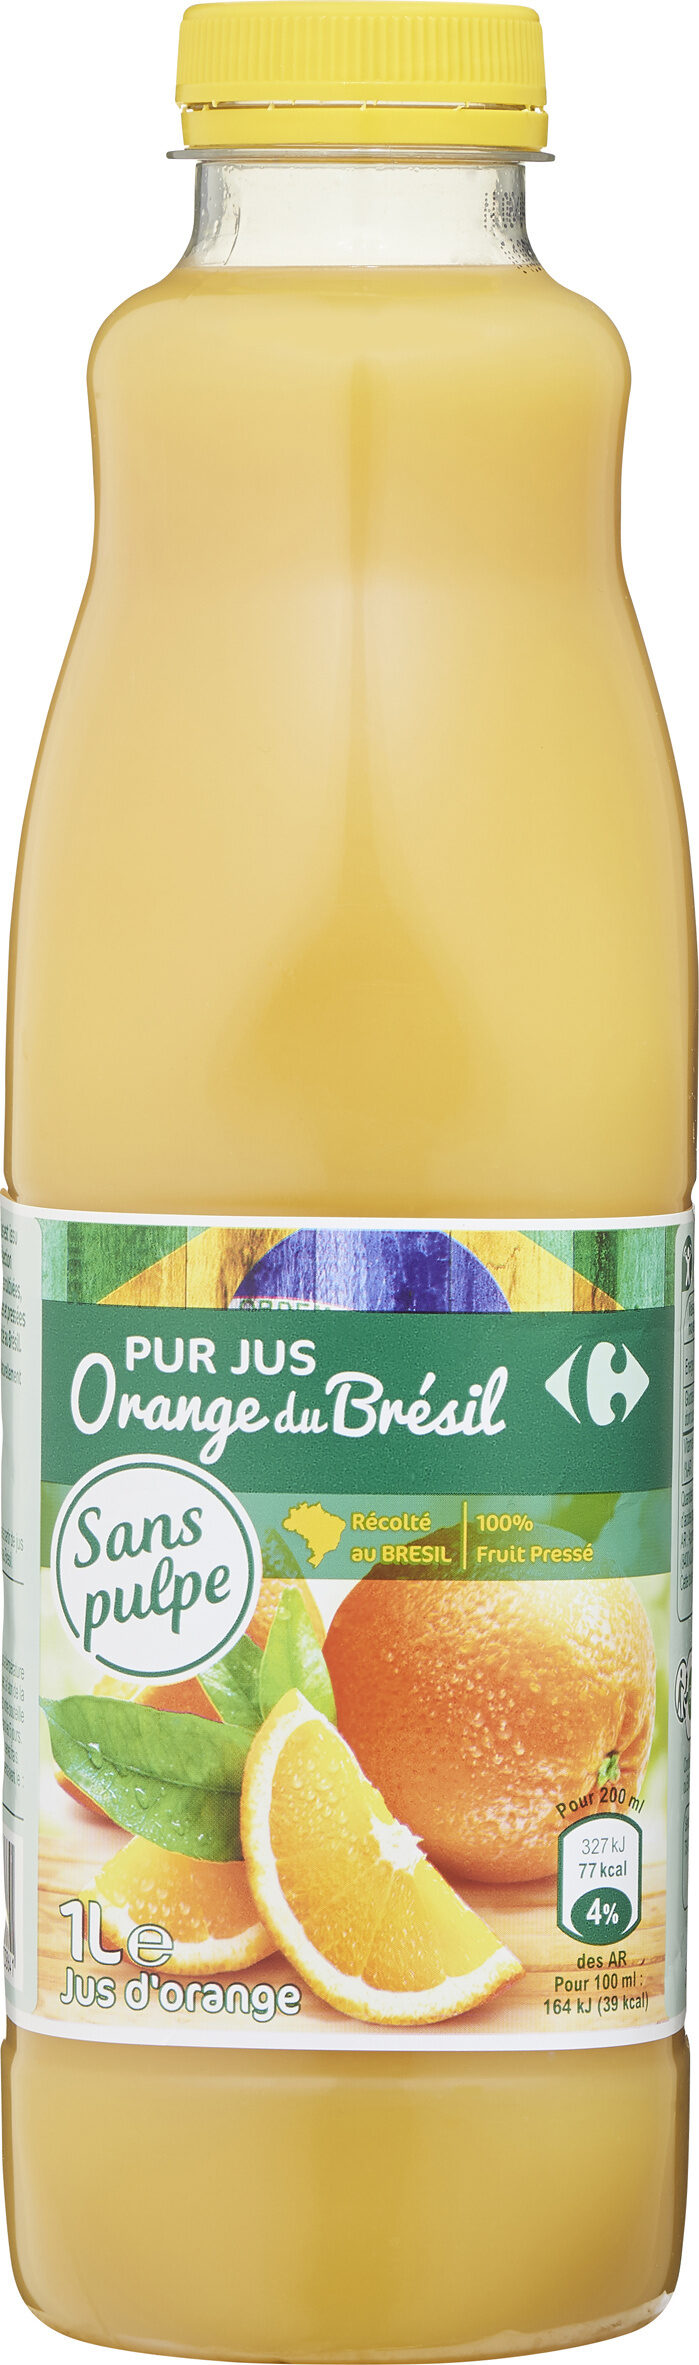 100% pur jus orange du brésil sans pulpe - Product - fr